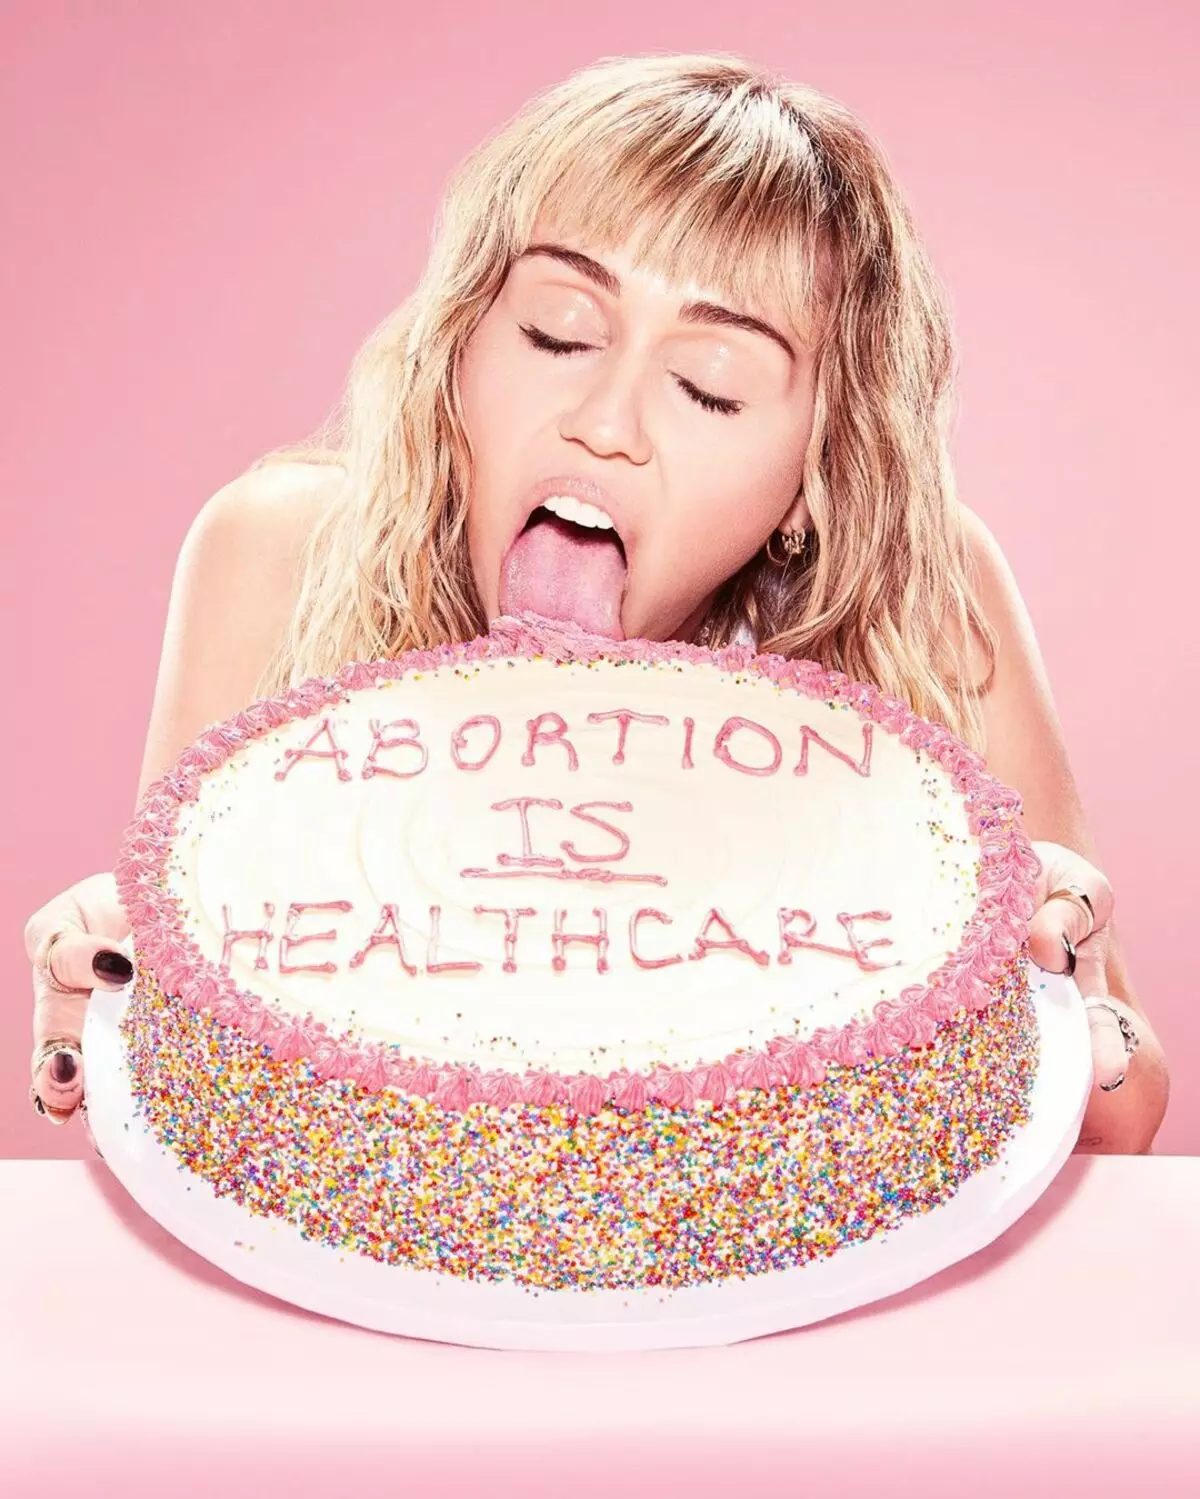 माइली साइरस ने गर्भपात के समर्थन में एक केक के साथ फोटो के लिए माफ़ी मांगी 61711_1